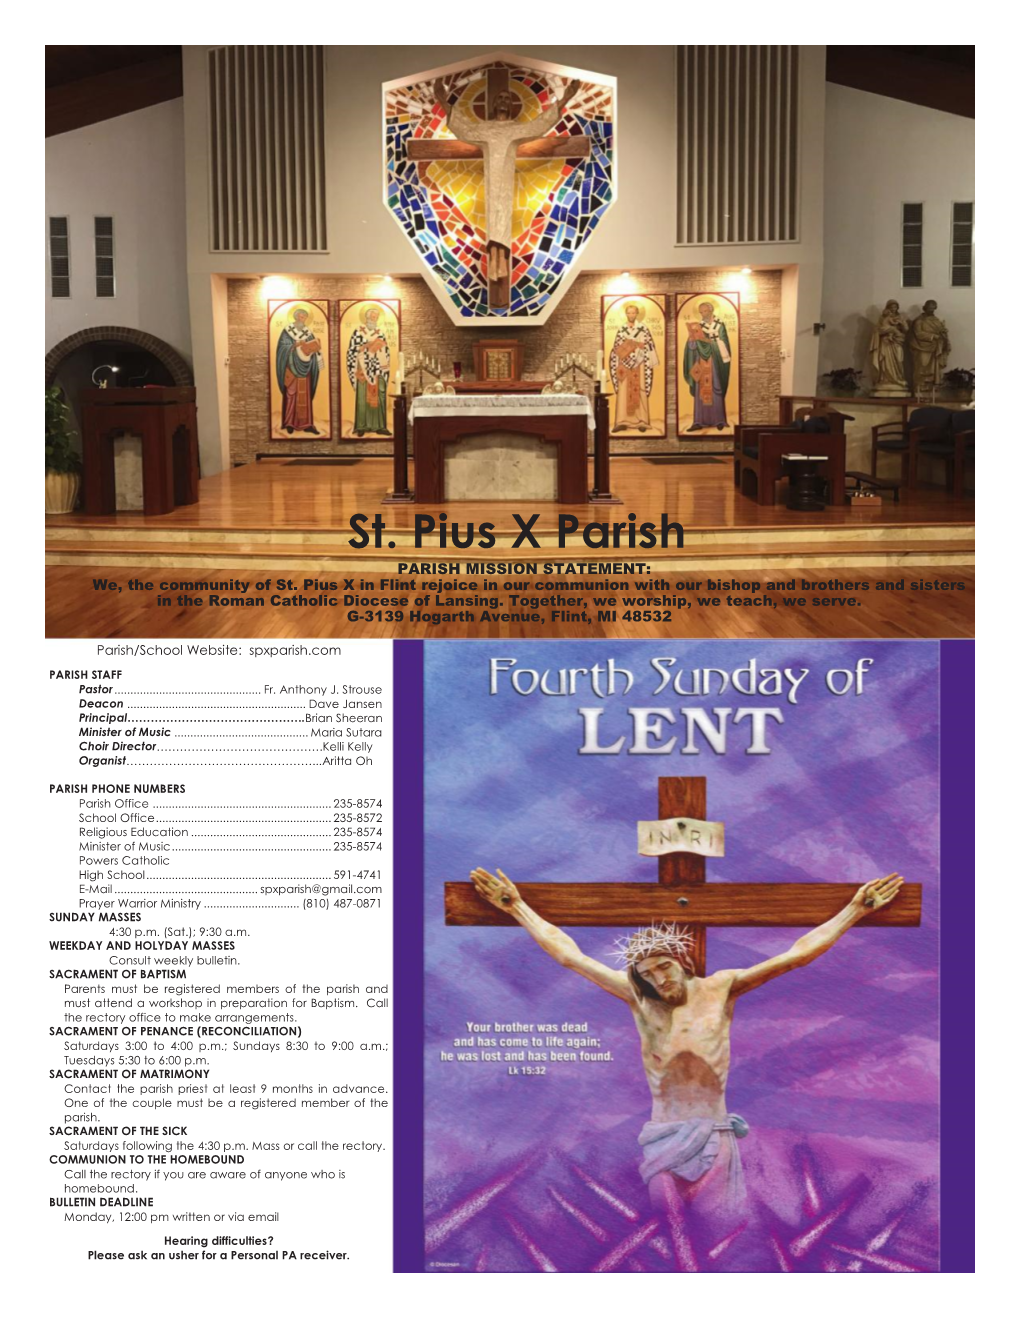 St. Pius X Parish PARISH MISSION STATEMENT: We, the Community of St